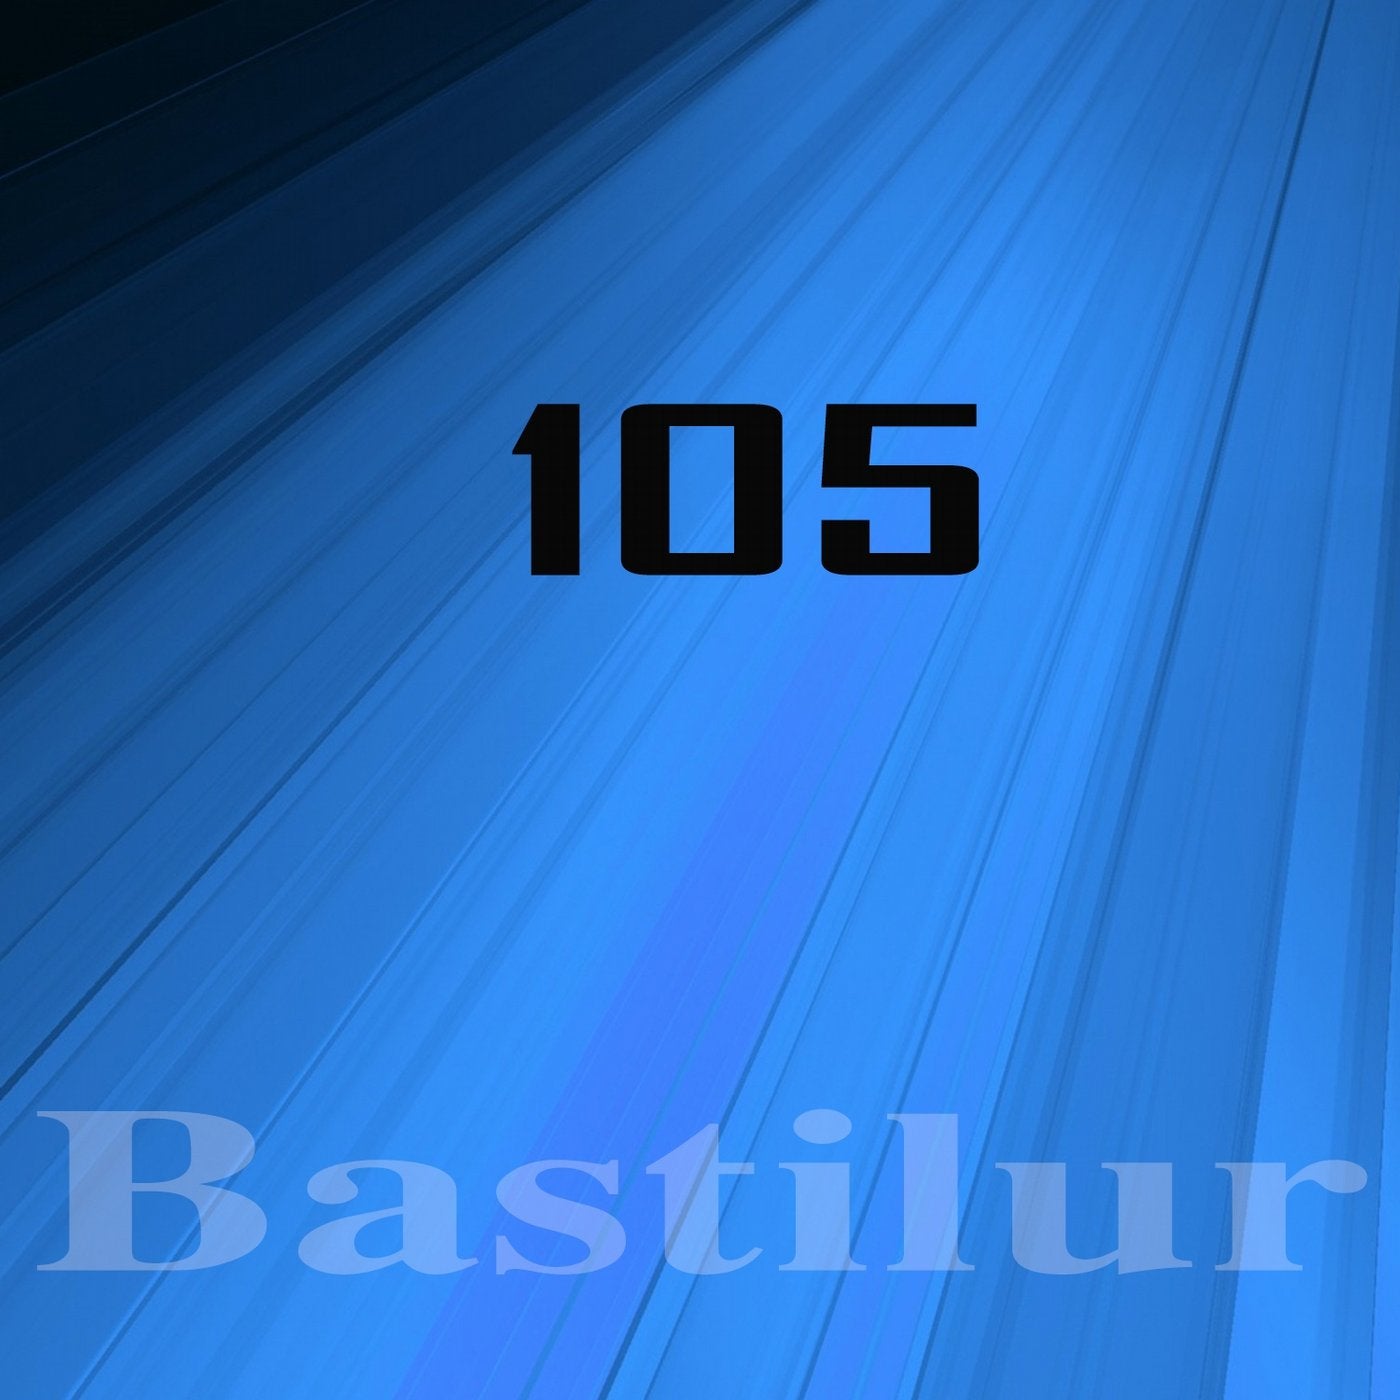 Bastilur, Vol.105